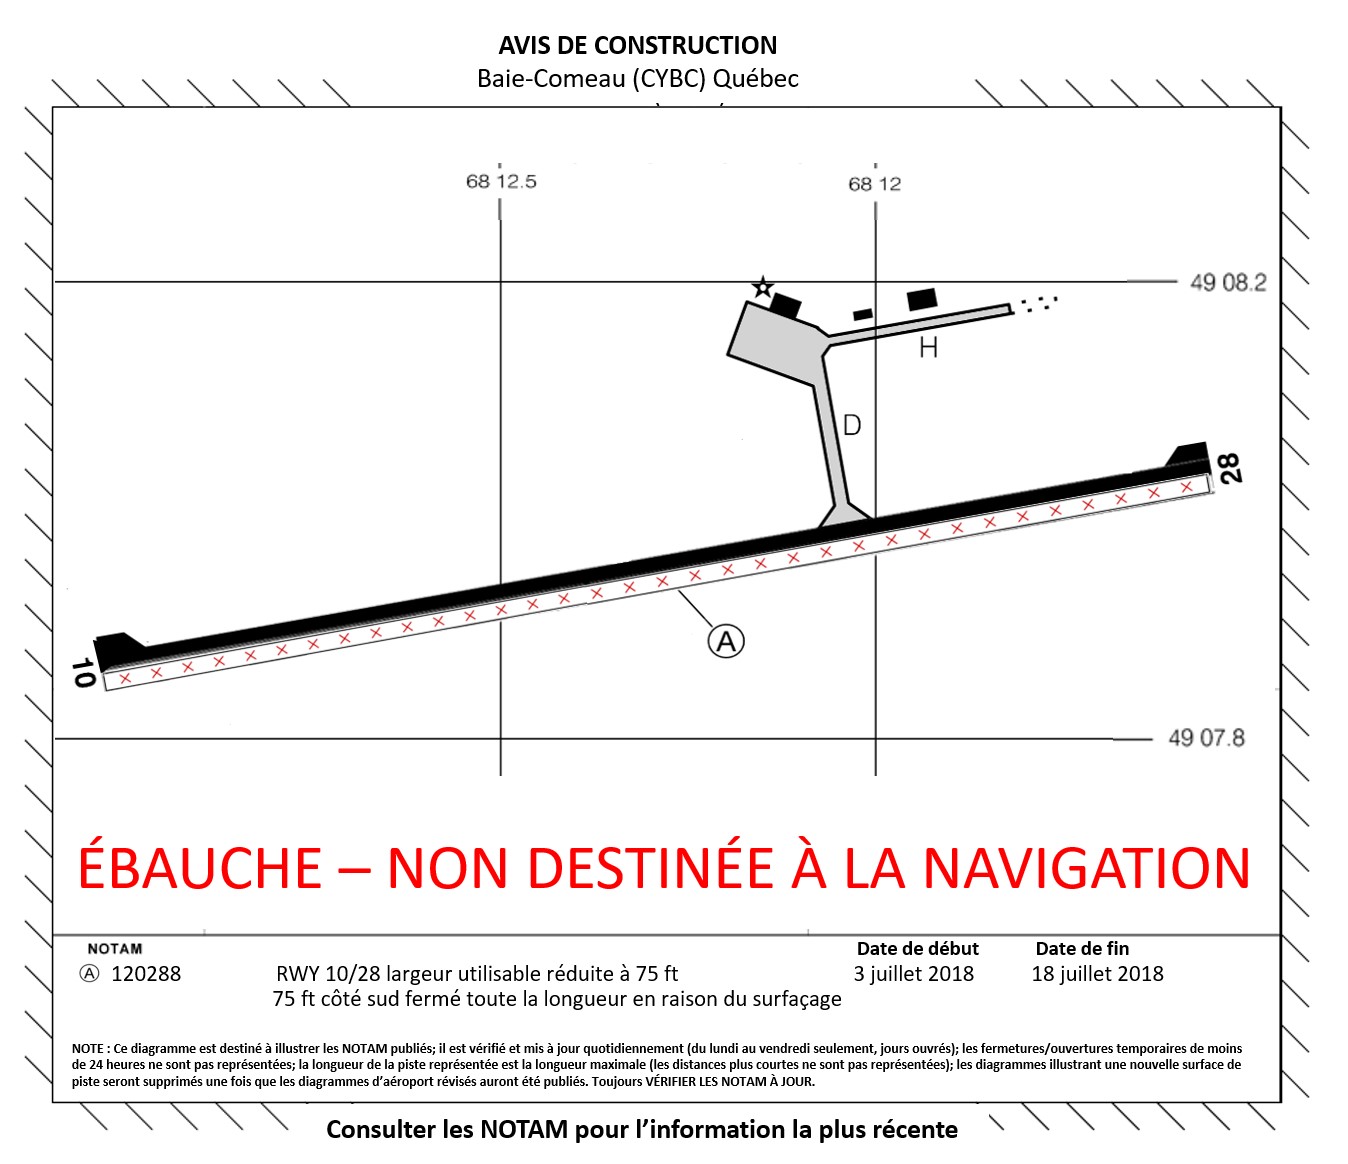 Exemple de représentation graphique du NOTAM de l’aéroport de Baie-Comeau créée en suivant le modèle d’avis de construction des États-Unis publié par la Federal Aviation Administration (Source : BST)